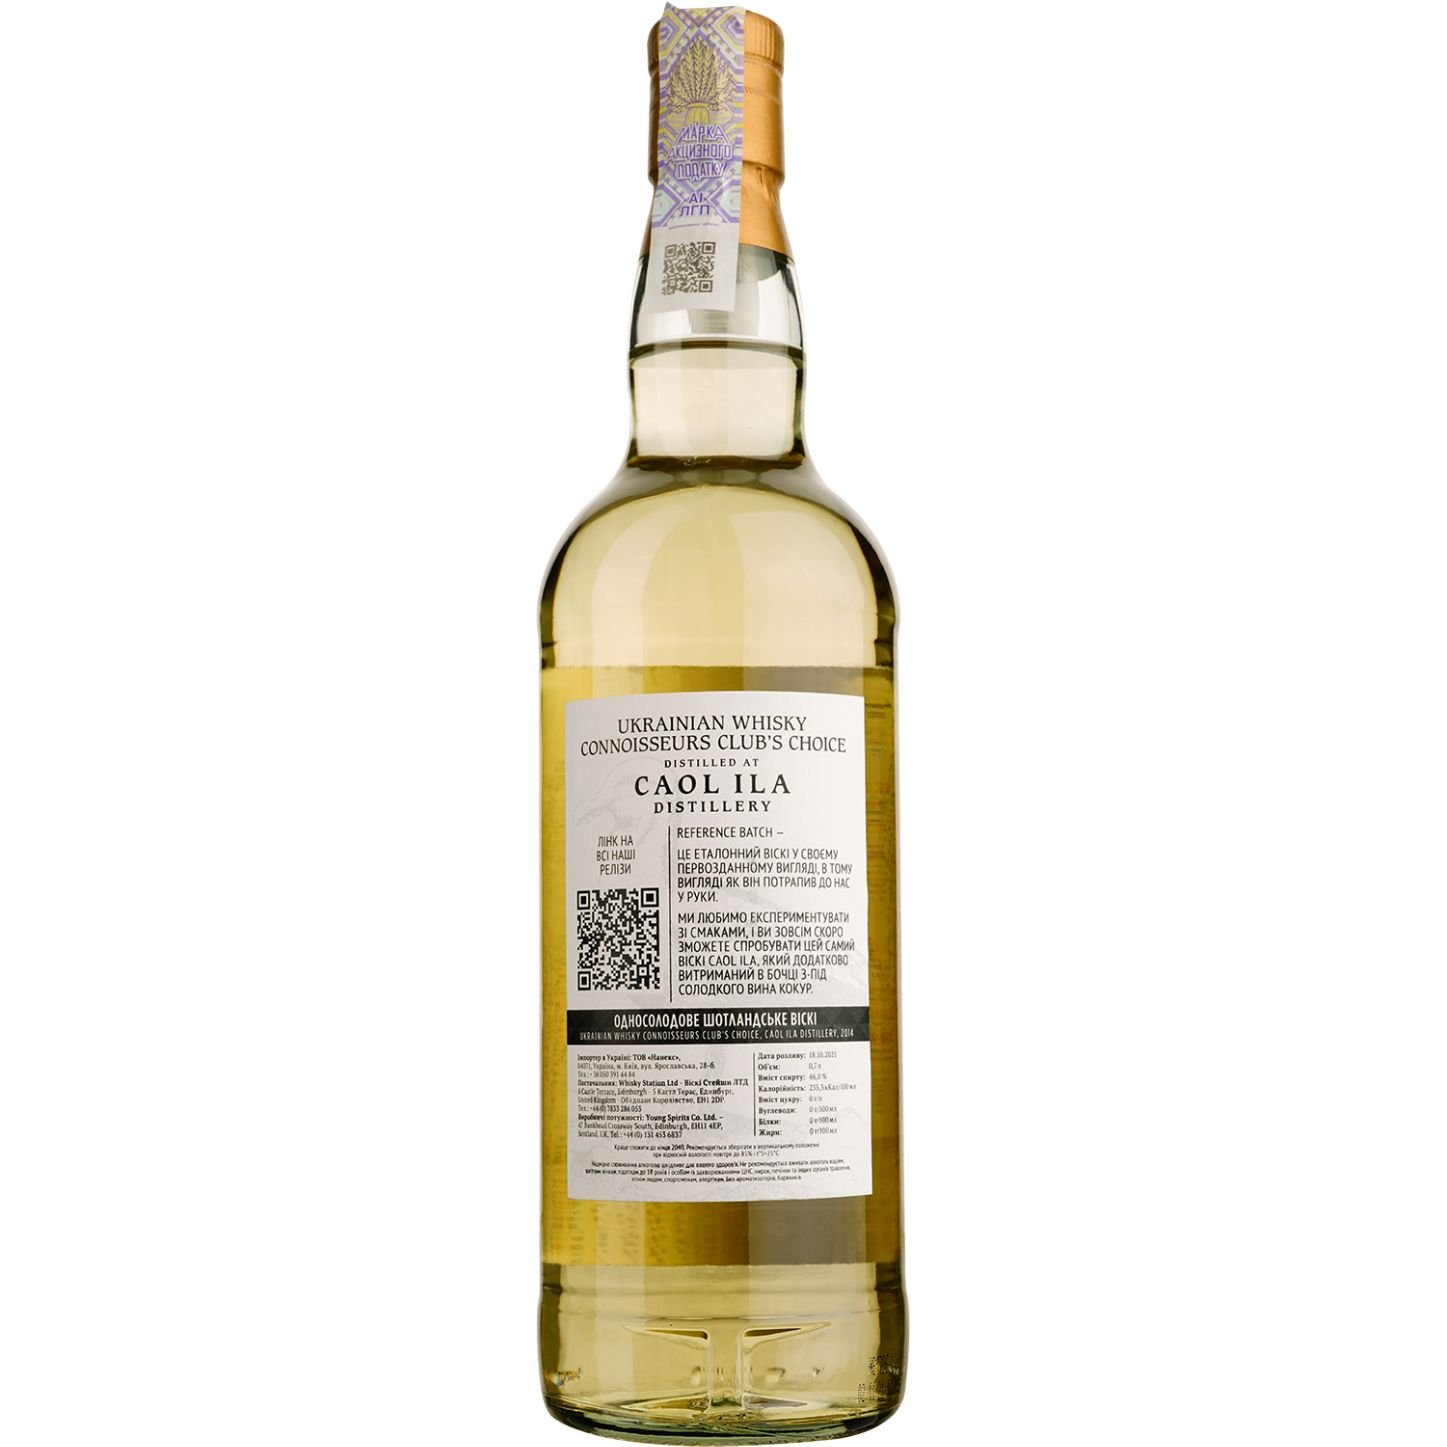 Виски Caol Ila 2014 Refill Bourbon Single Malt Scotch Whisky, 46%, 0,7 л - фото 2